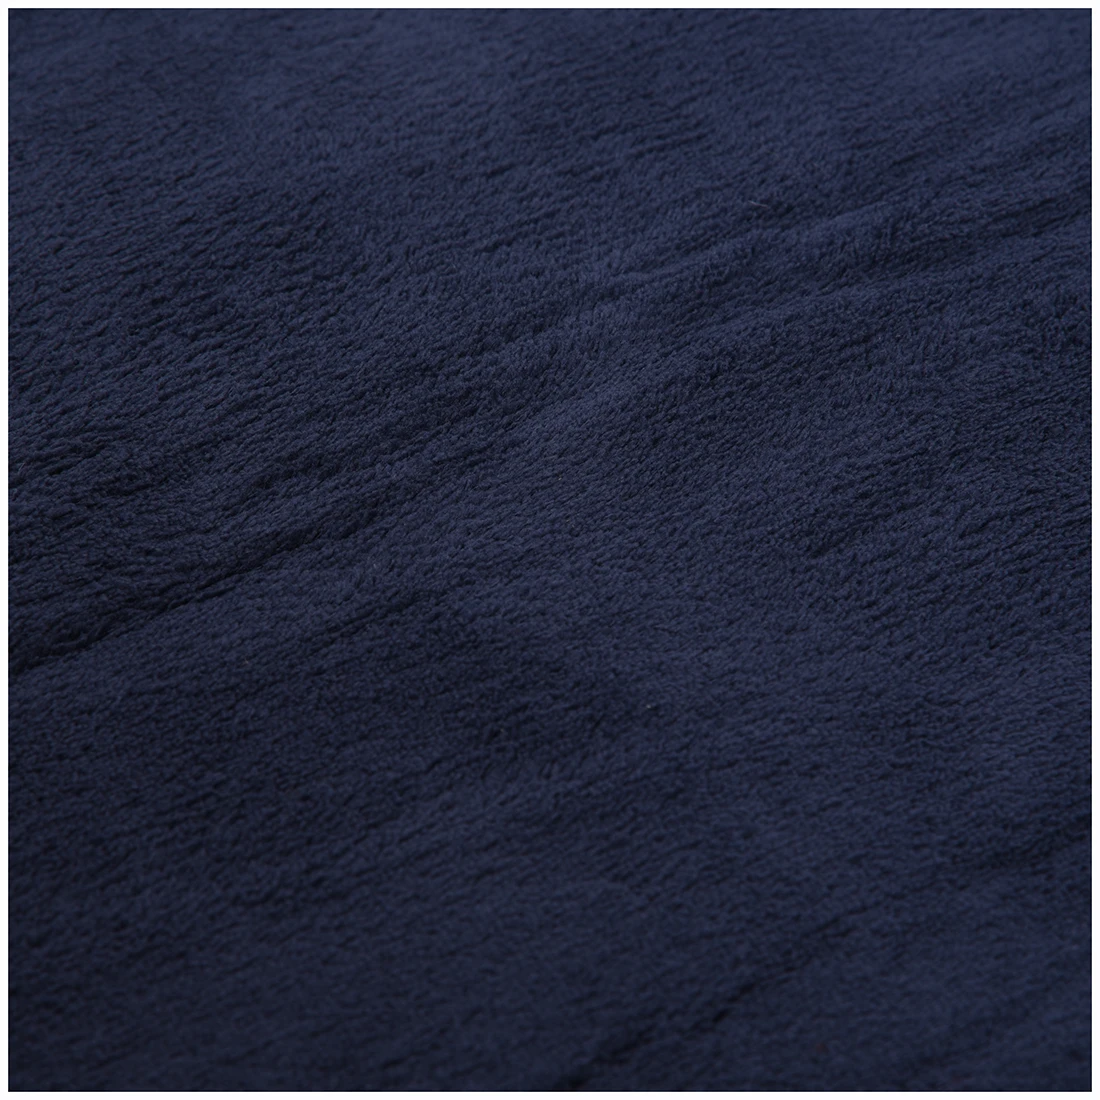 Микрофибра, Нескользящие коврики для ванной, мягкий, коралловый бархат, супер впитывающий коврик, ковер 40x60 см, темно-синий